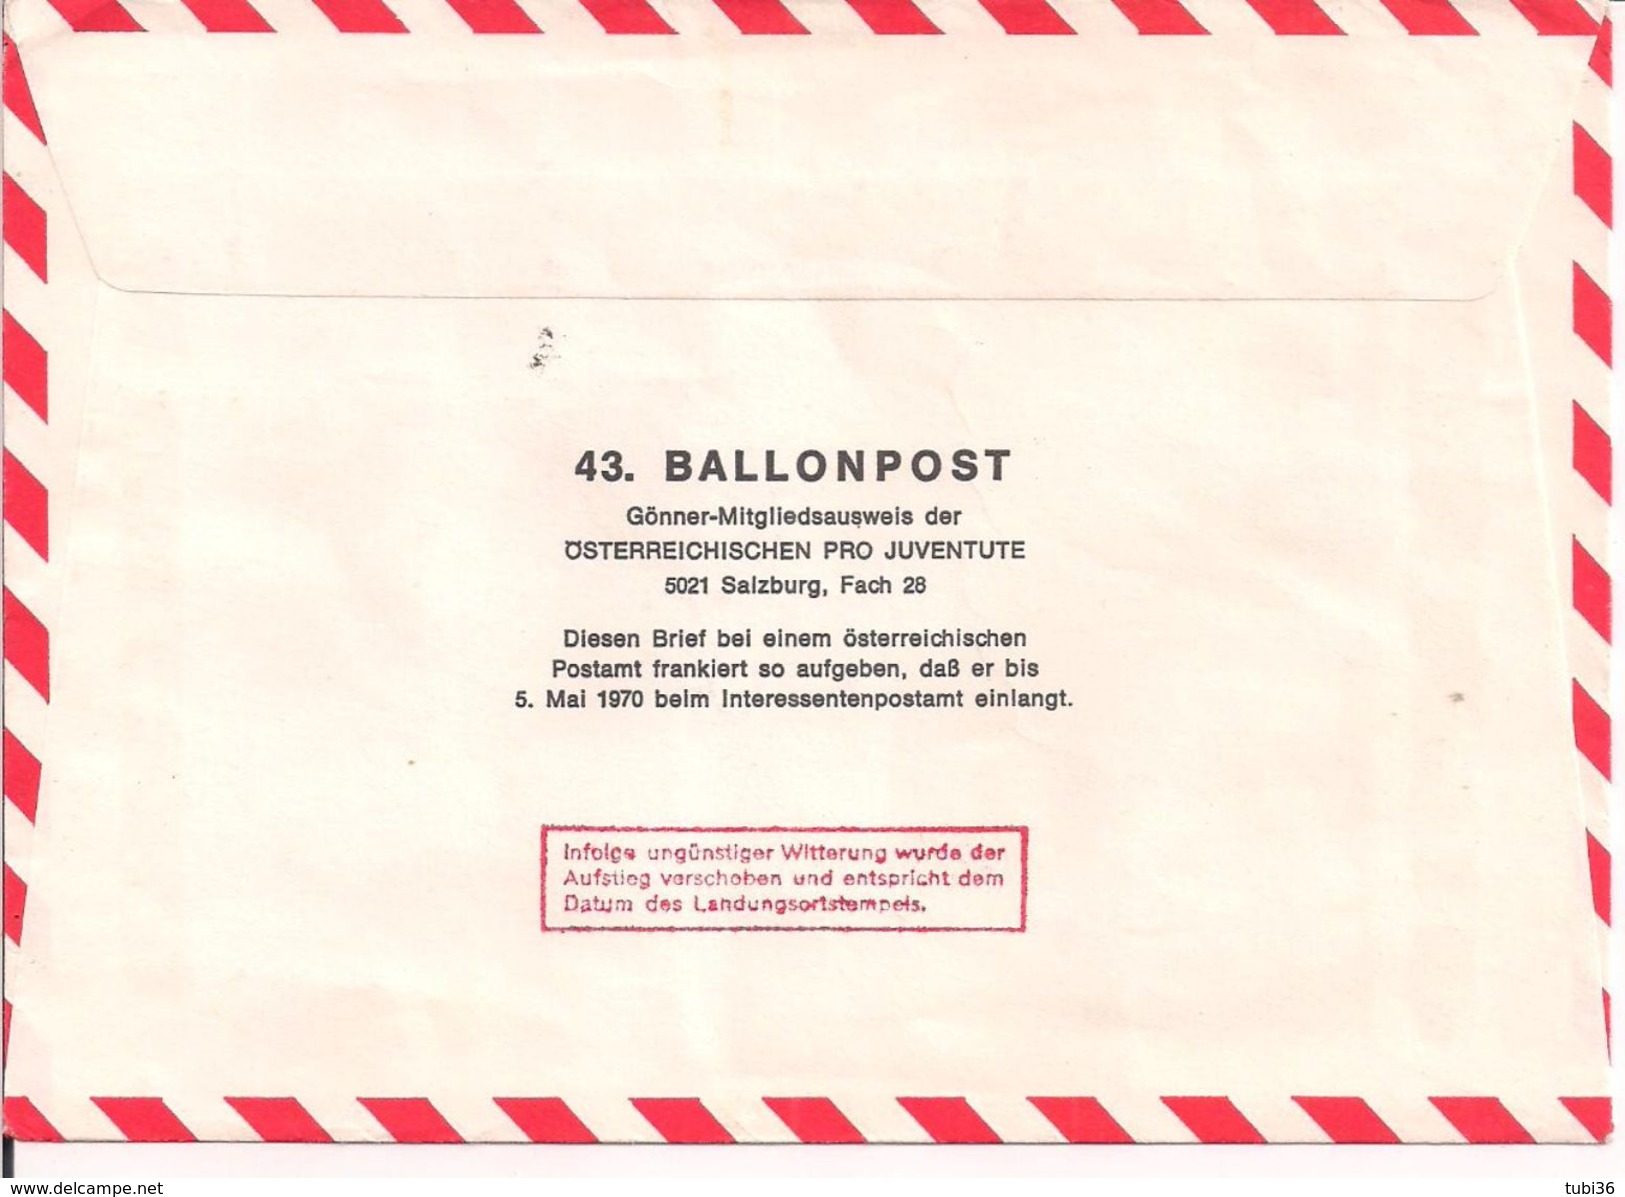 Austria - MIT  Ballonpost 43 Zweite Republik 25 Jahre 10.05.1970 / -0 - Ballonpost